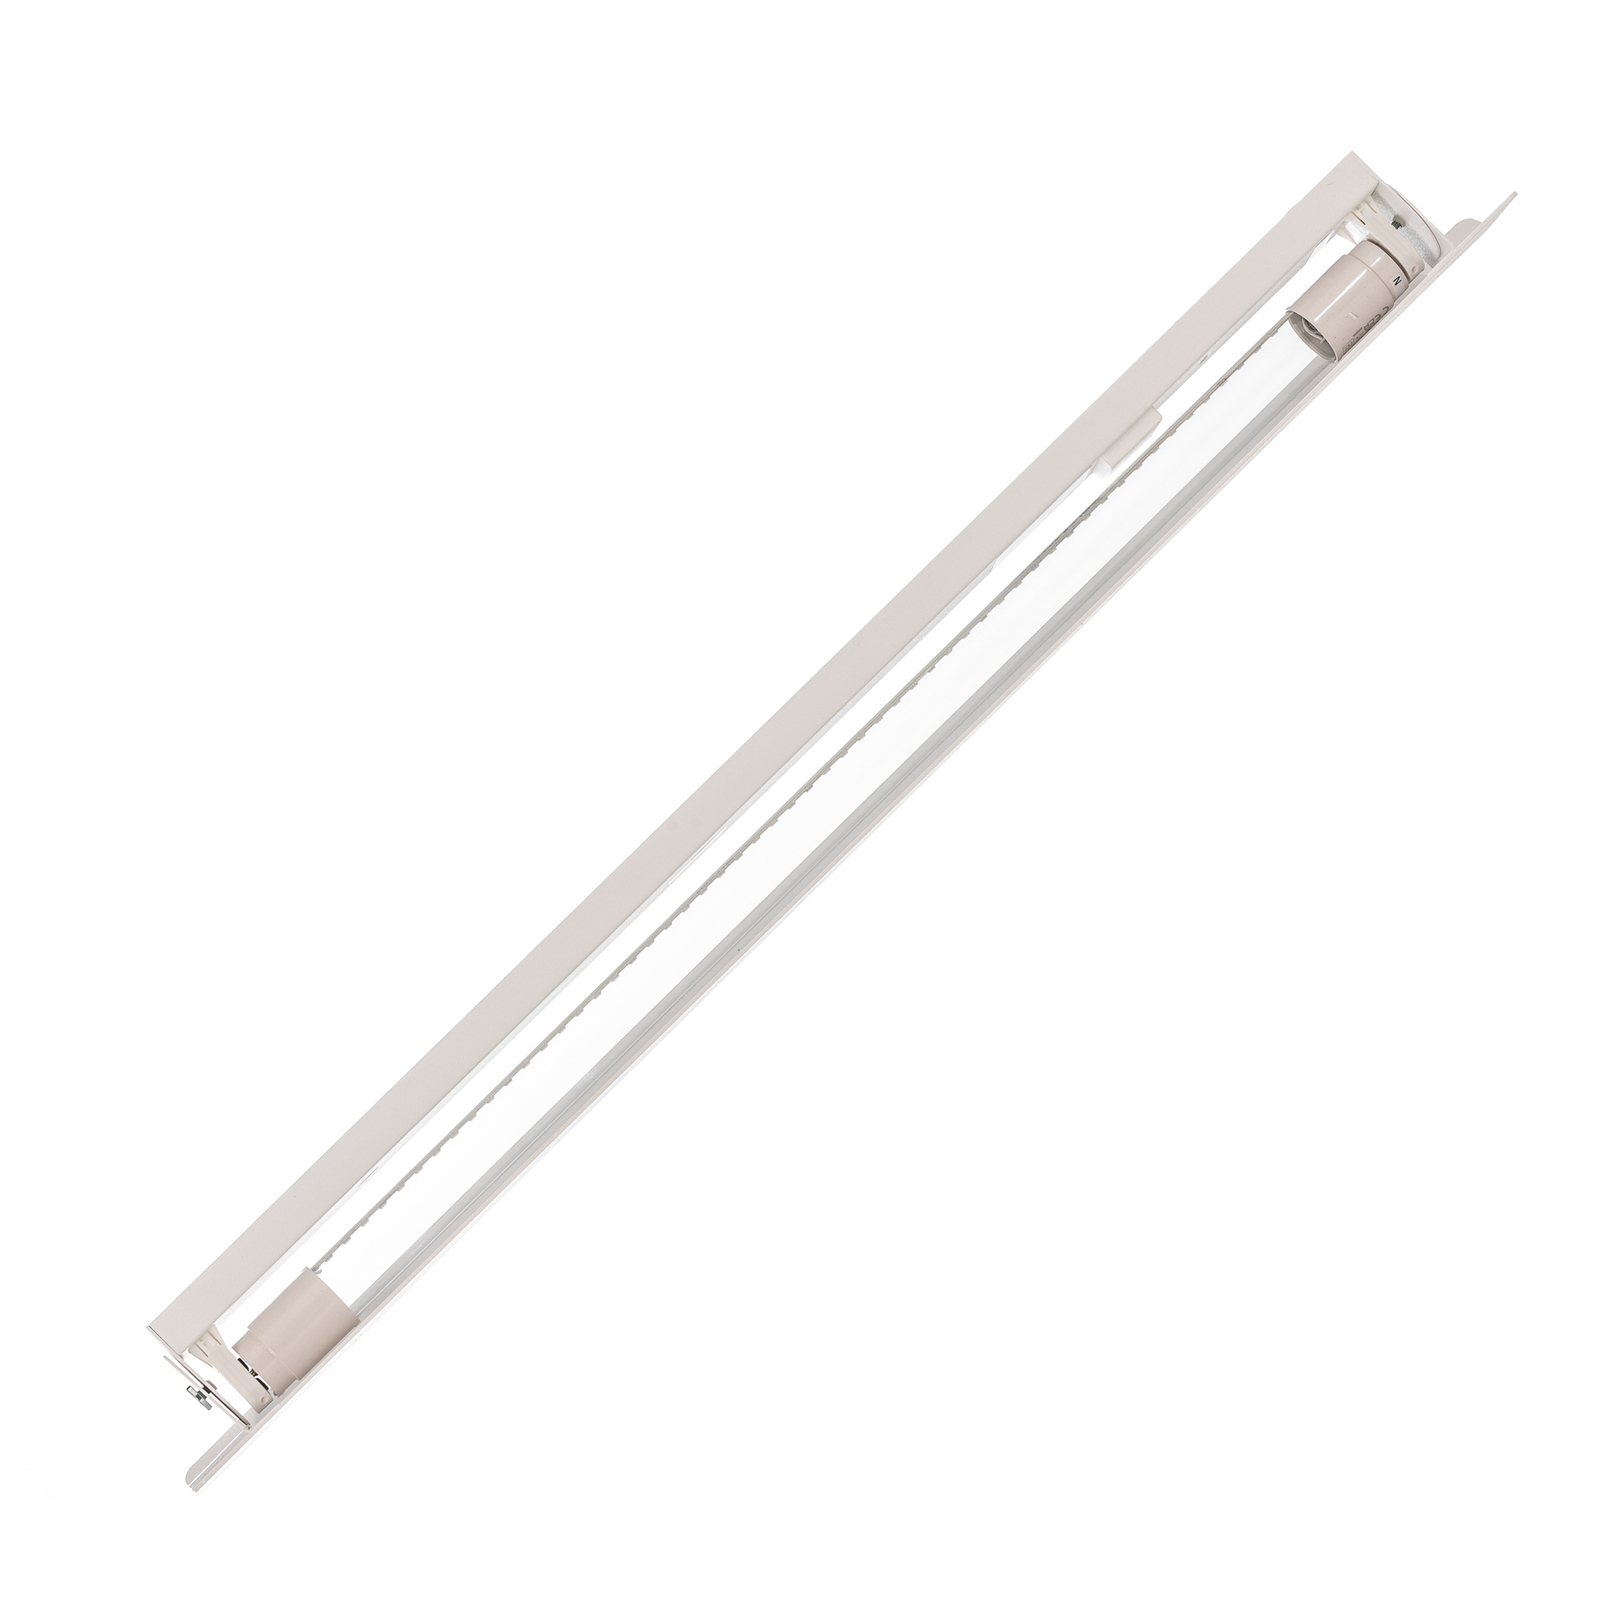 Wandlamp Wing, wit, staal, schakelaar, 68 cm breed